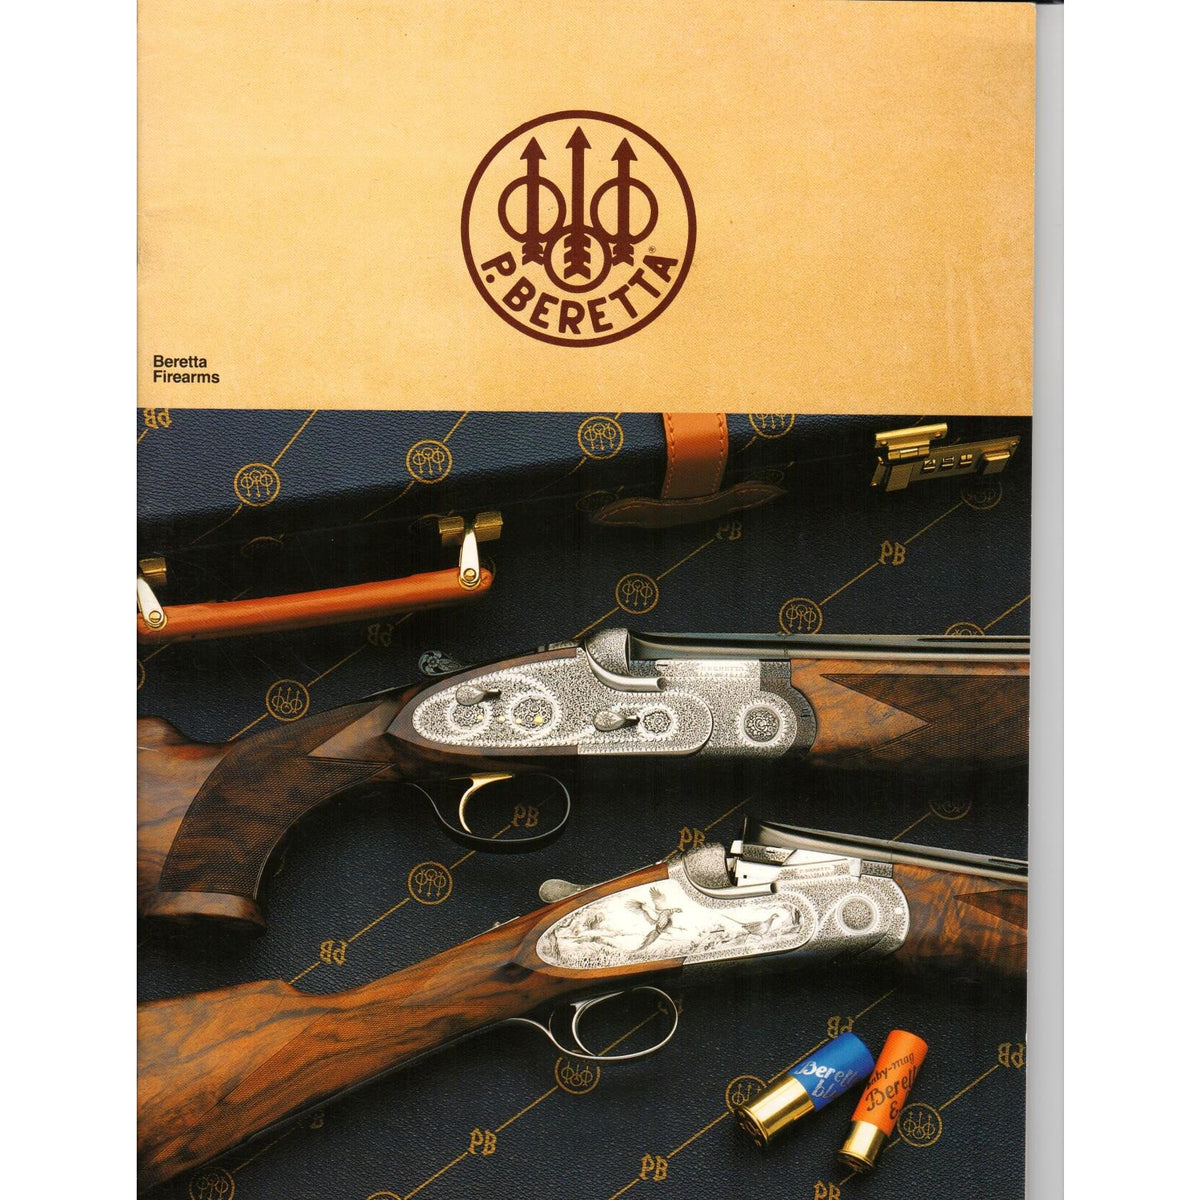 Beretta Firearms (Copyright 1988)